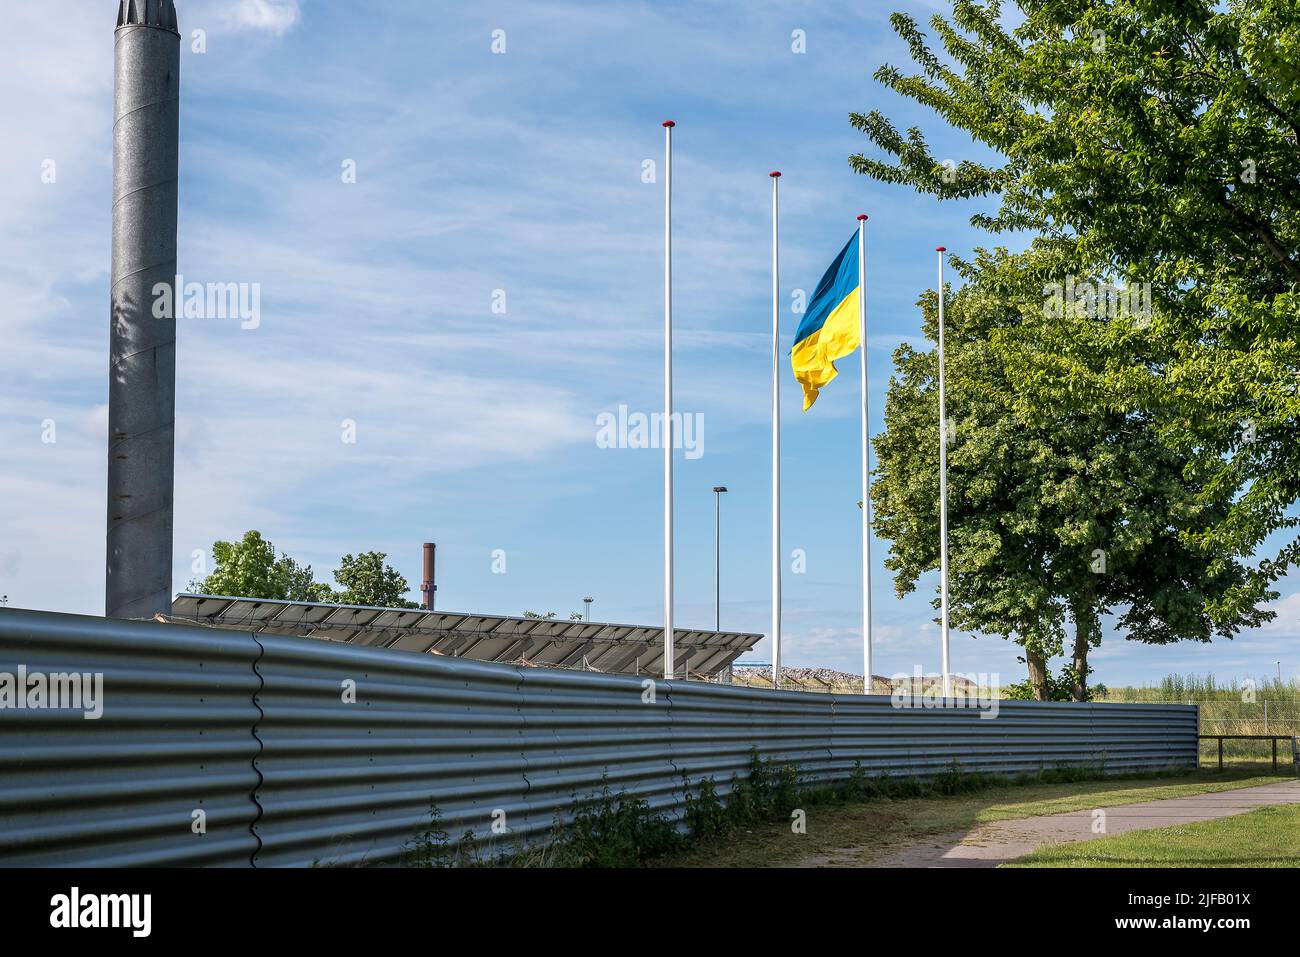 El oligarca ruso Vladimir Lisin ondea la bandera ucraniana sobre su acería en Frederiksværk, Dinamarca, el 28 de junio de 2022 Foto de stock